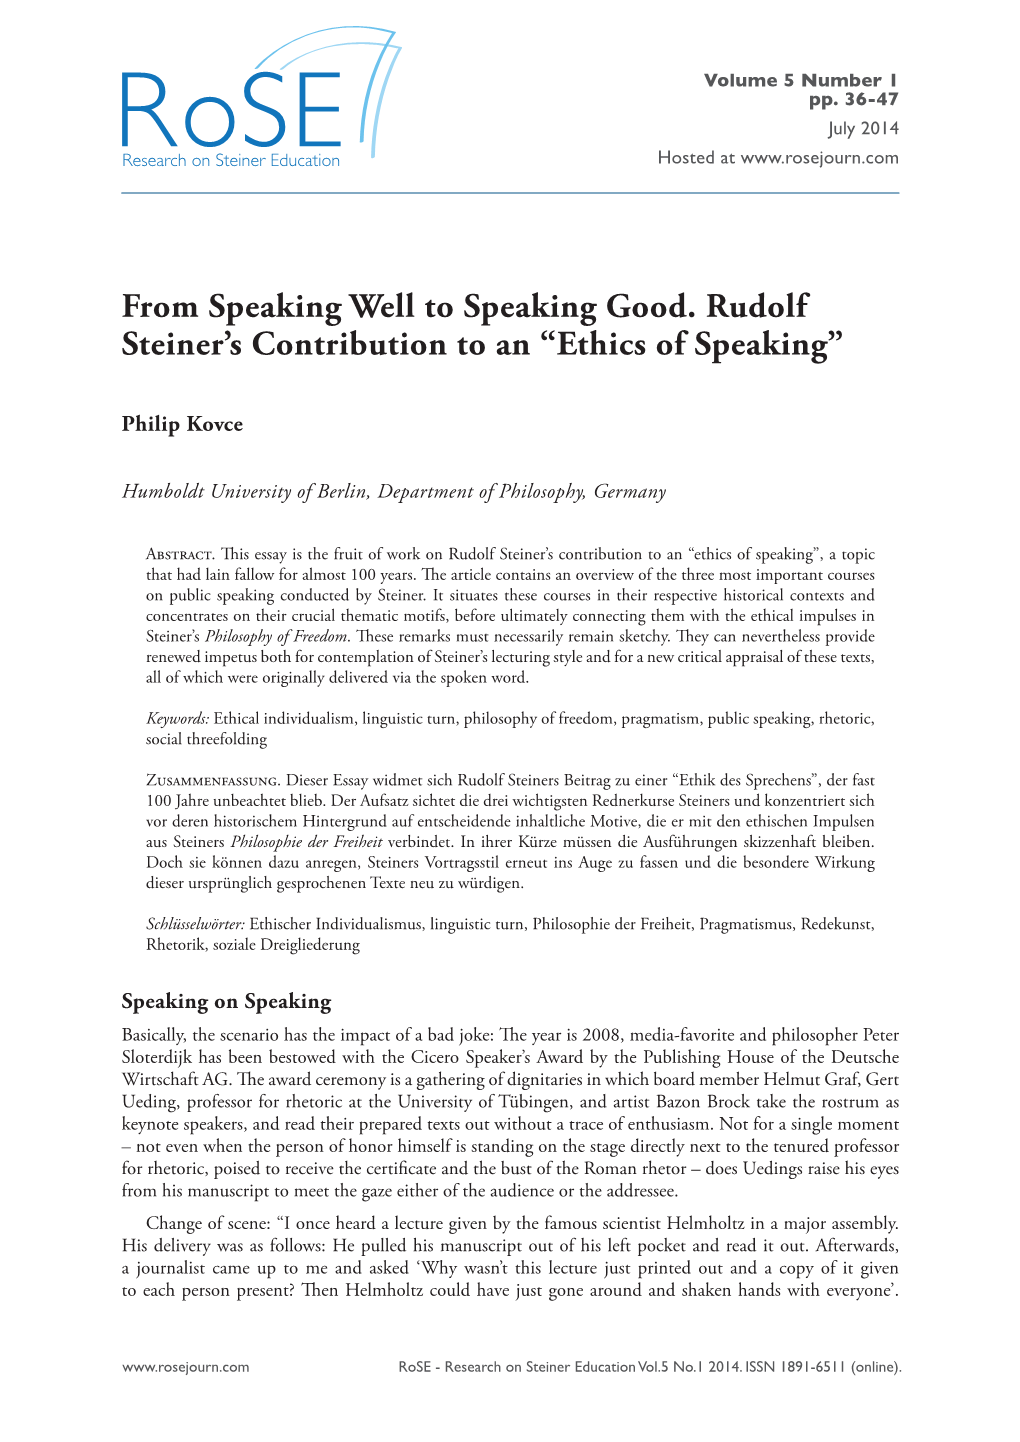 Ethics of Speaking”